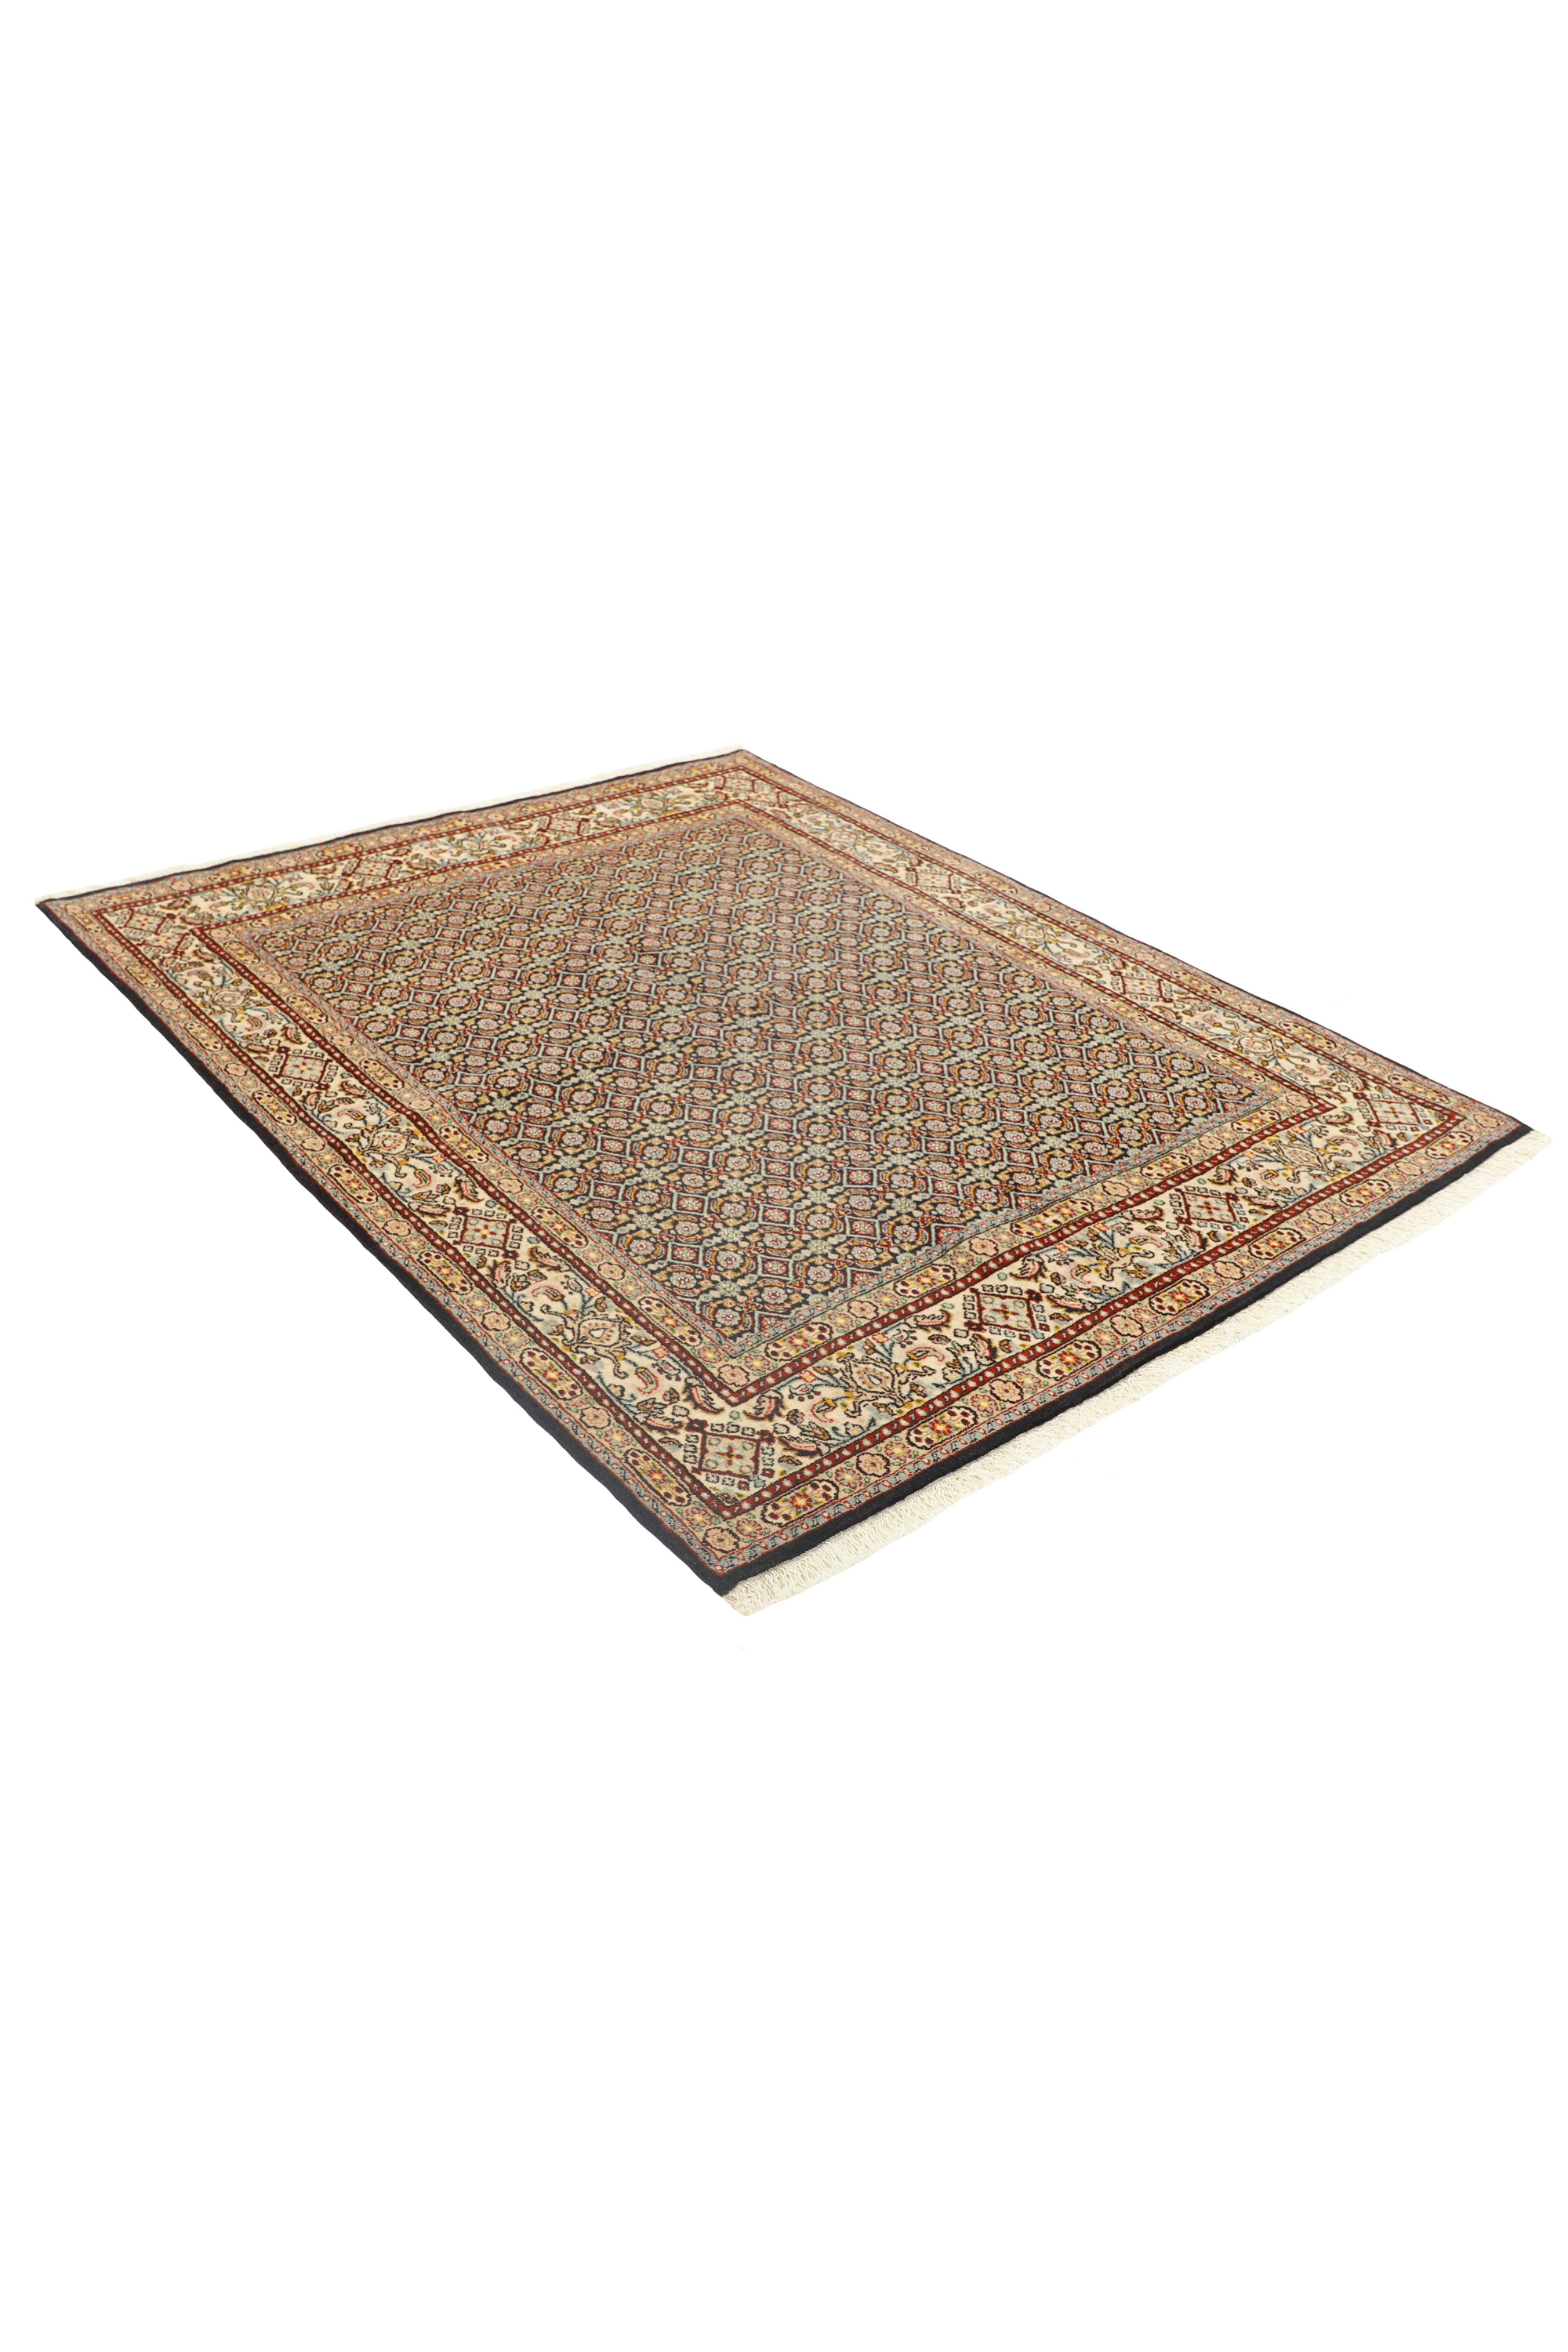 Traditional luxury Moud Mahi bordered rug